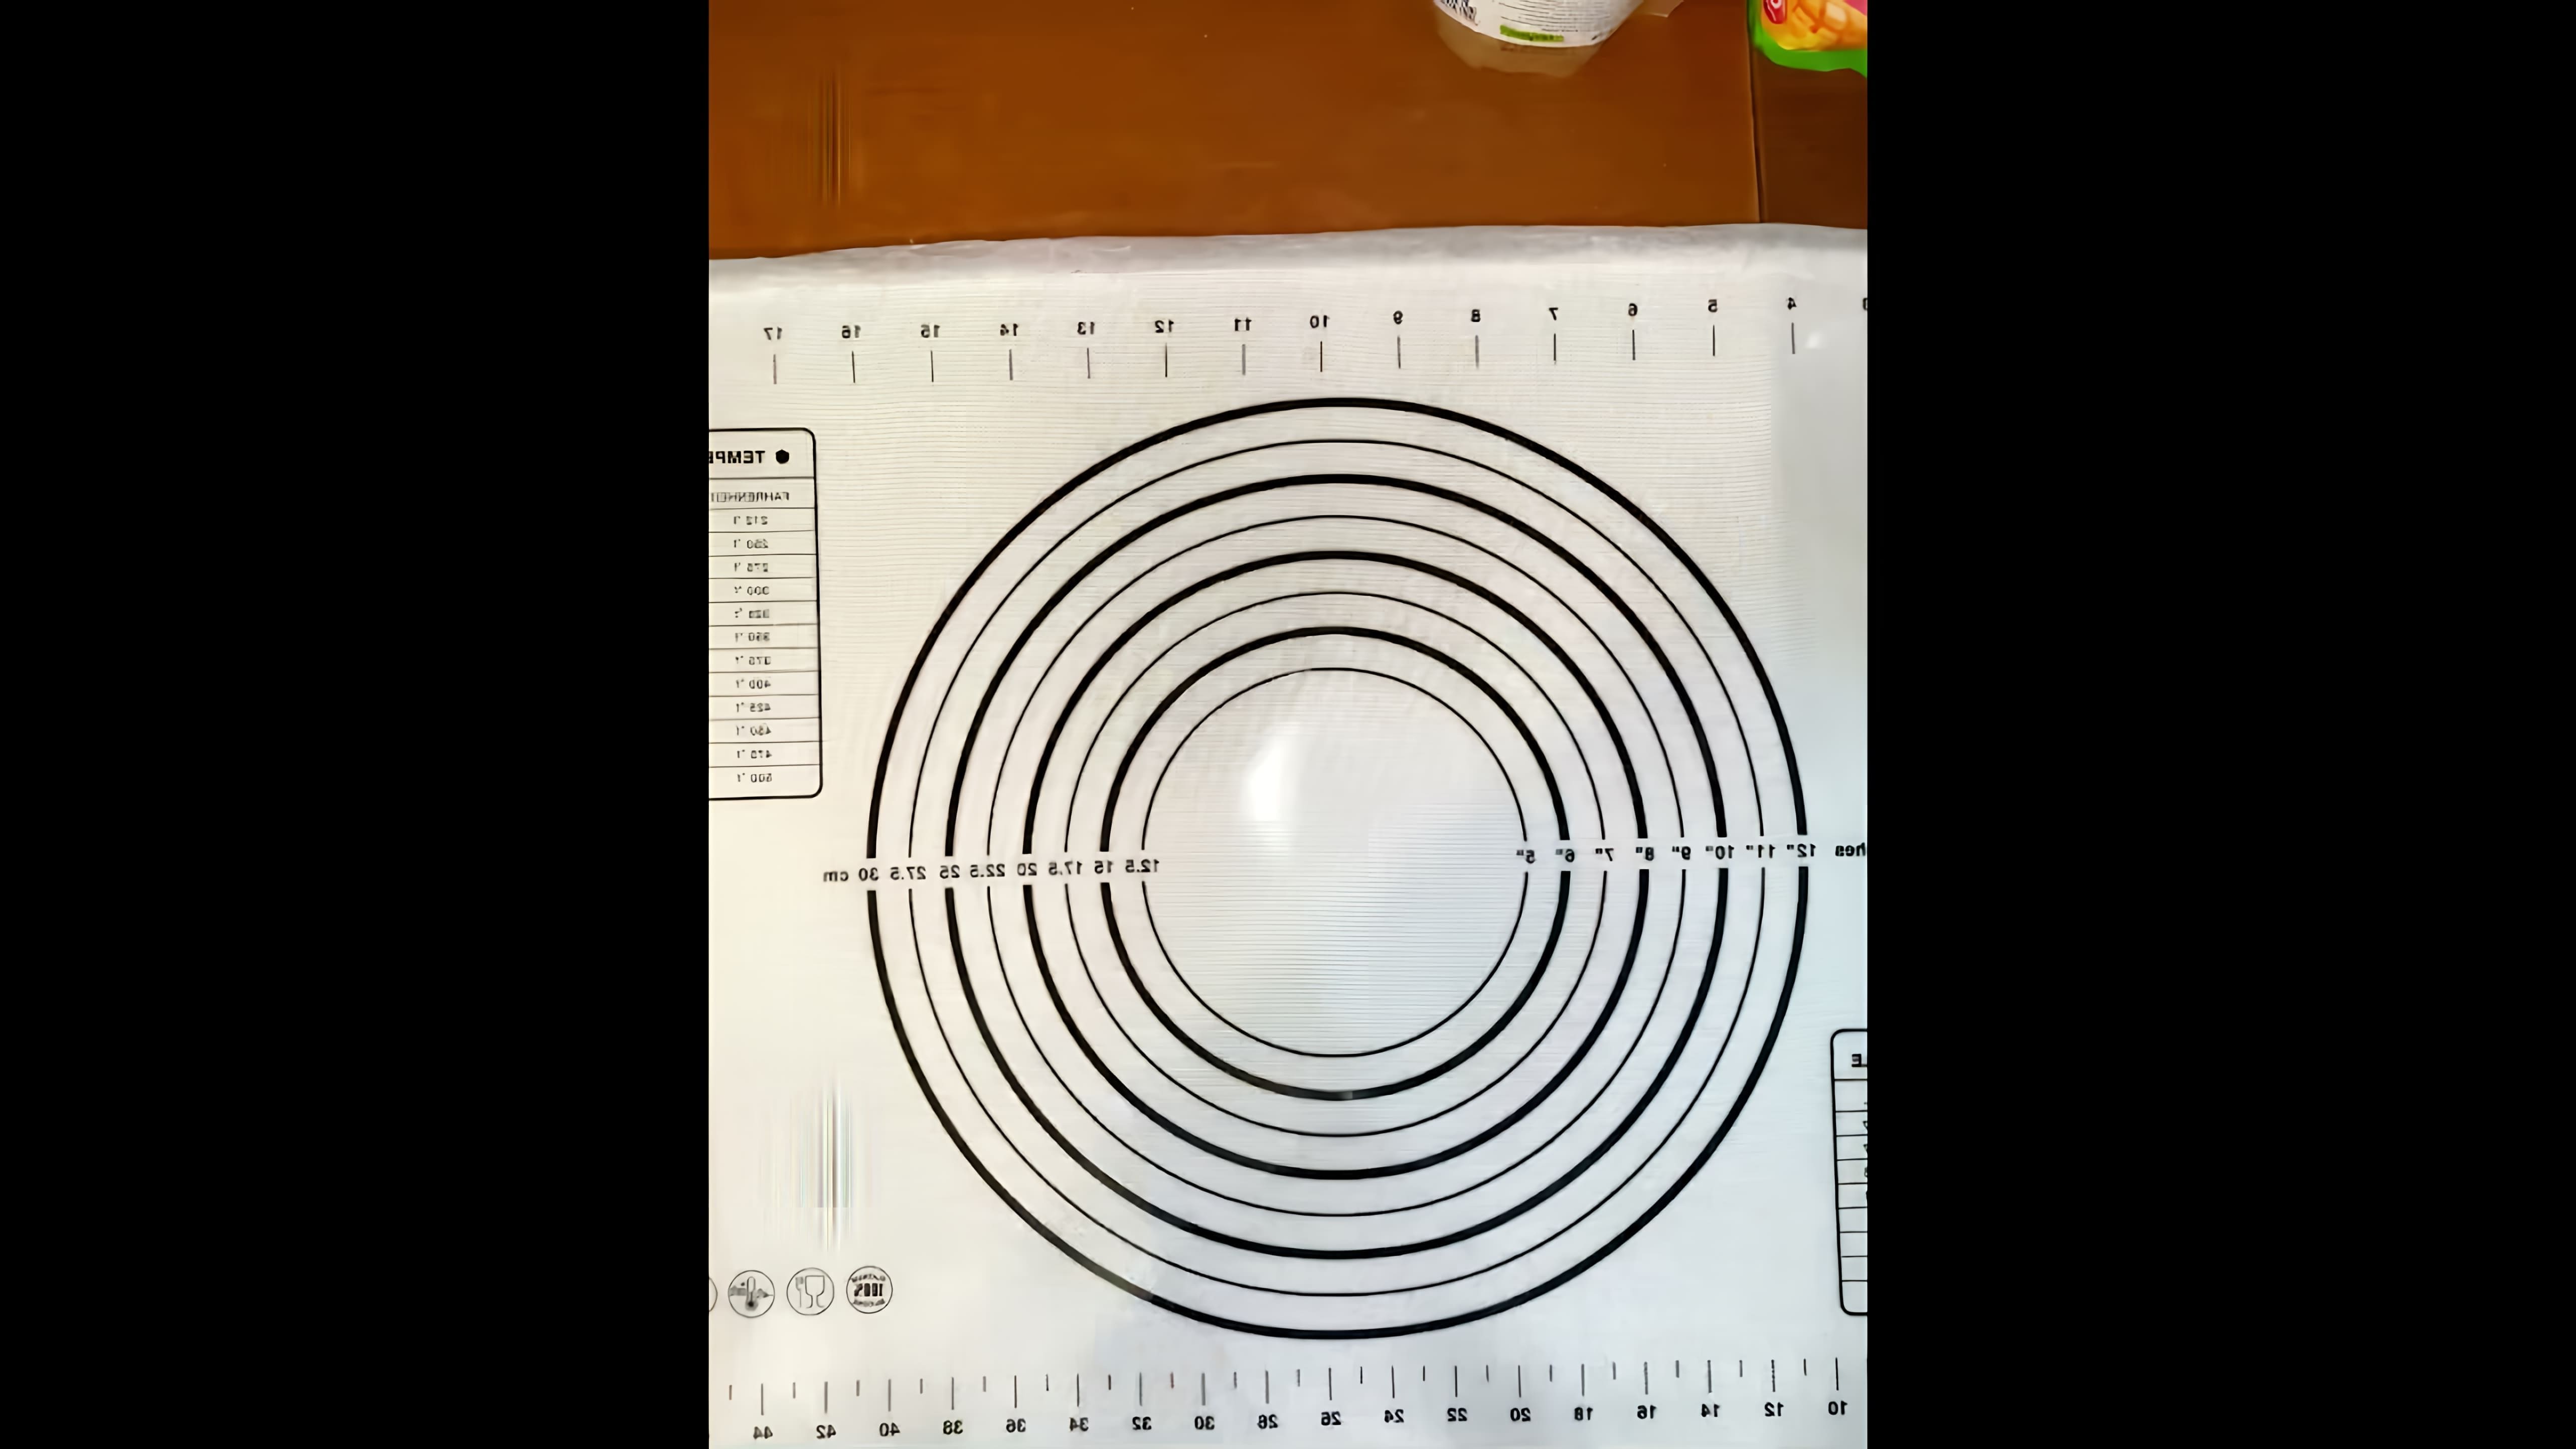 В этом видео демонстрируется рецепт приготовления обалденной закуски, которая украсит праздничный стол